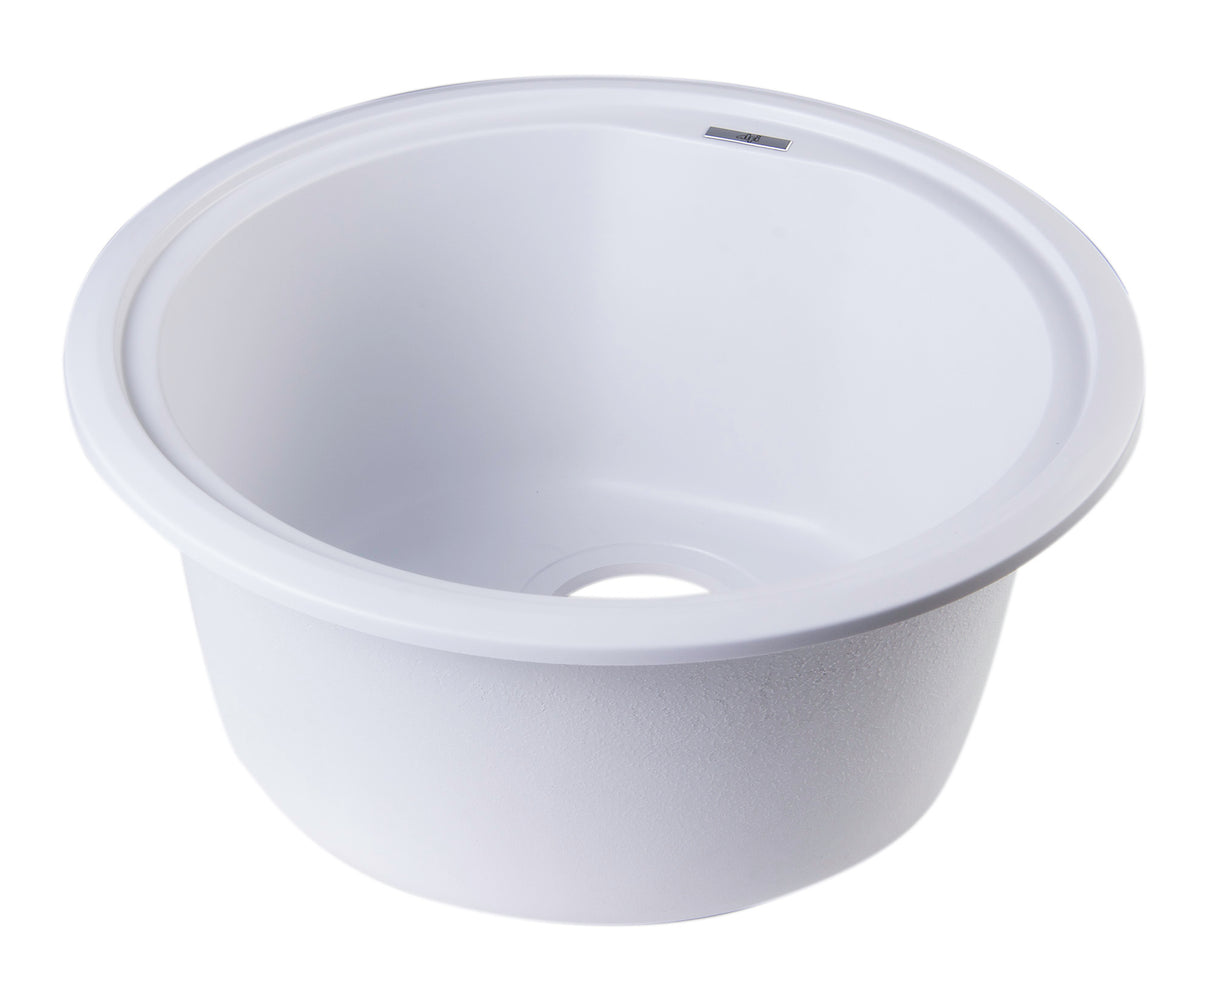 ALFI brand AB1717DI-W White 17" Drop-In Round Granite Composite Kitchen Prep Sink